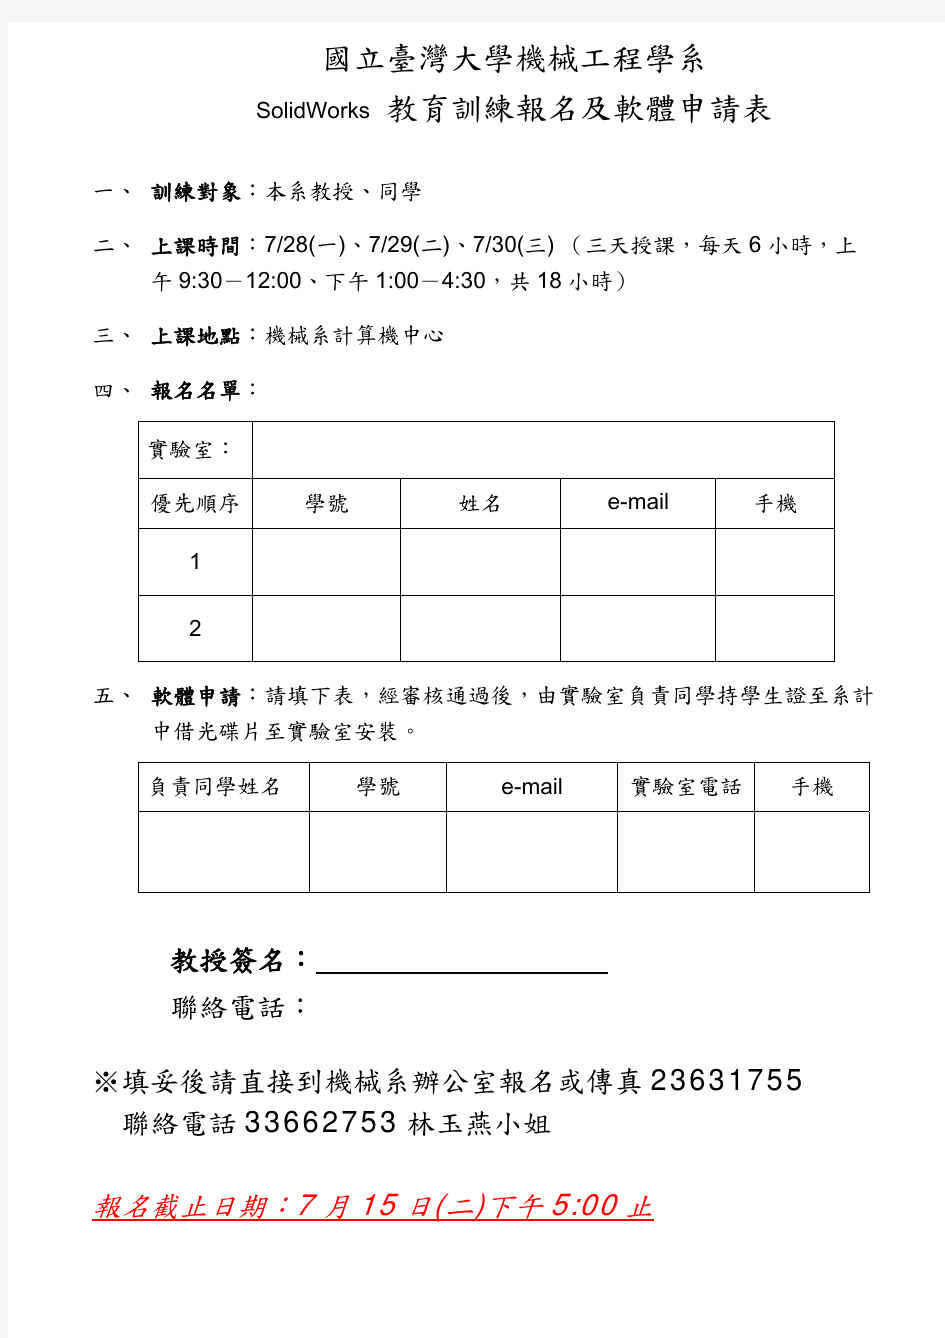 国立台湾大学机械工程学系solidworks教育训练规划表